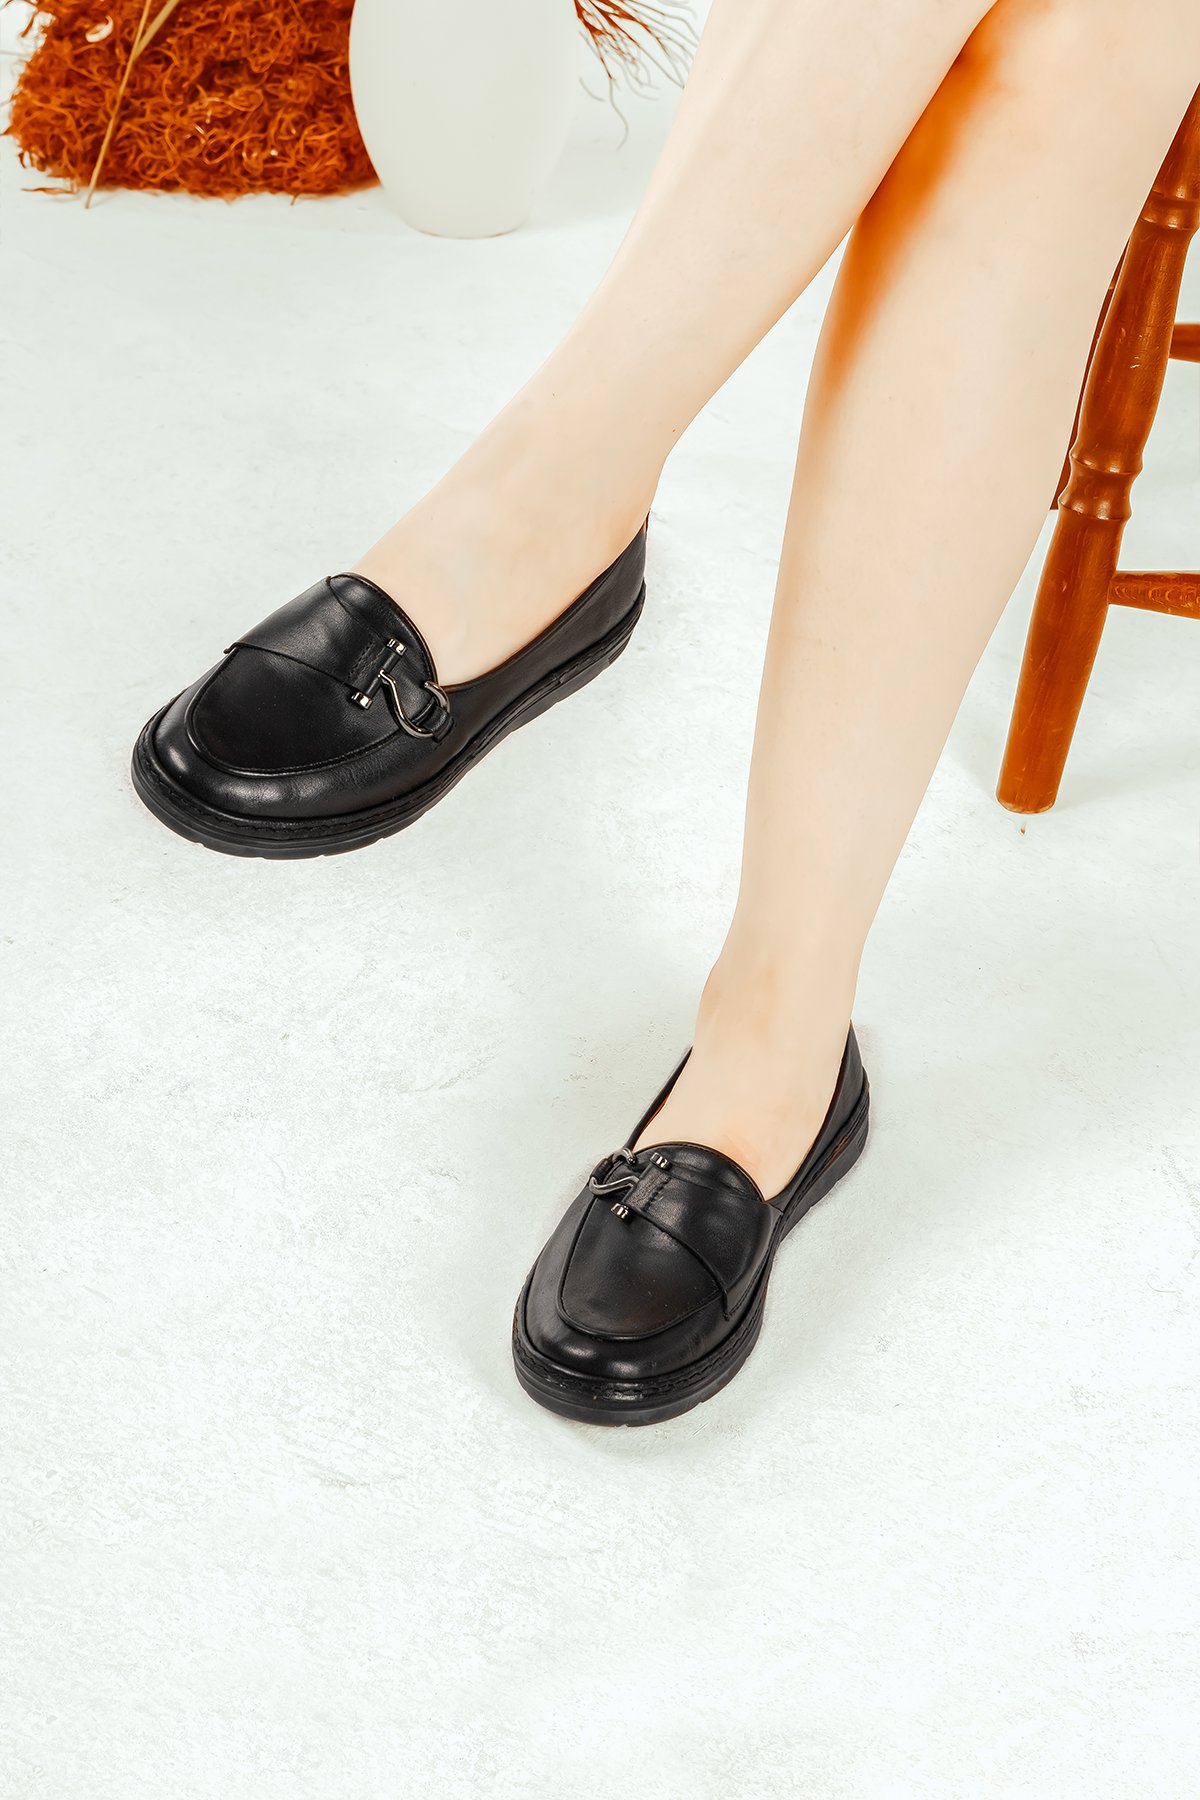 Cooliza Hakiki Deri Toka Detaylı Günlük Rahat Kadın Babet Casual Ayakkabı - Siyah